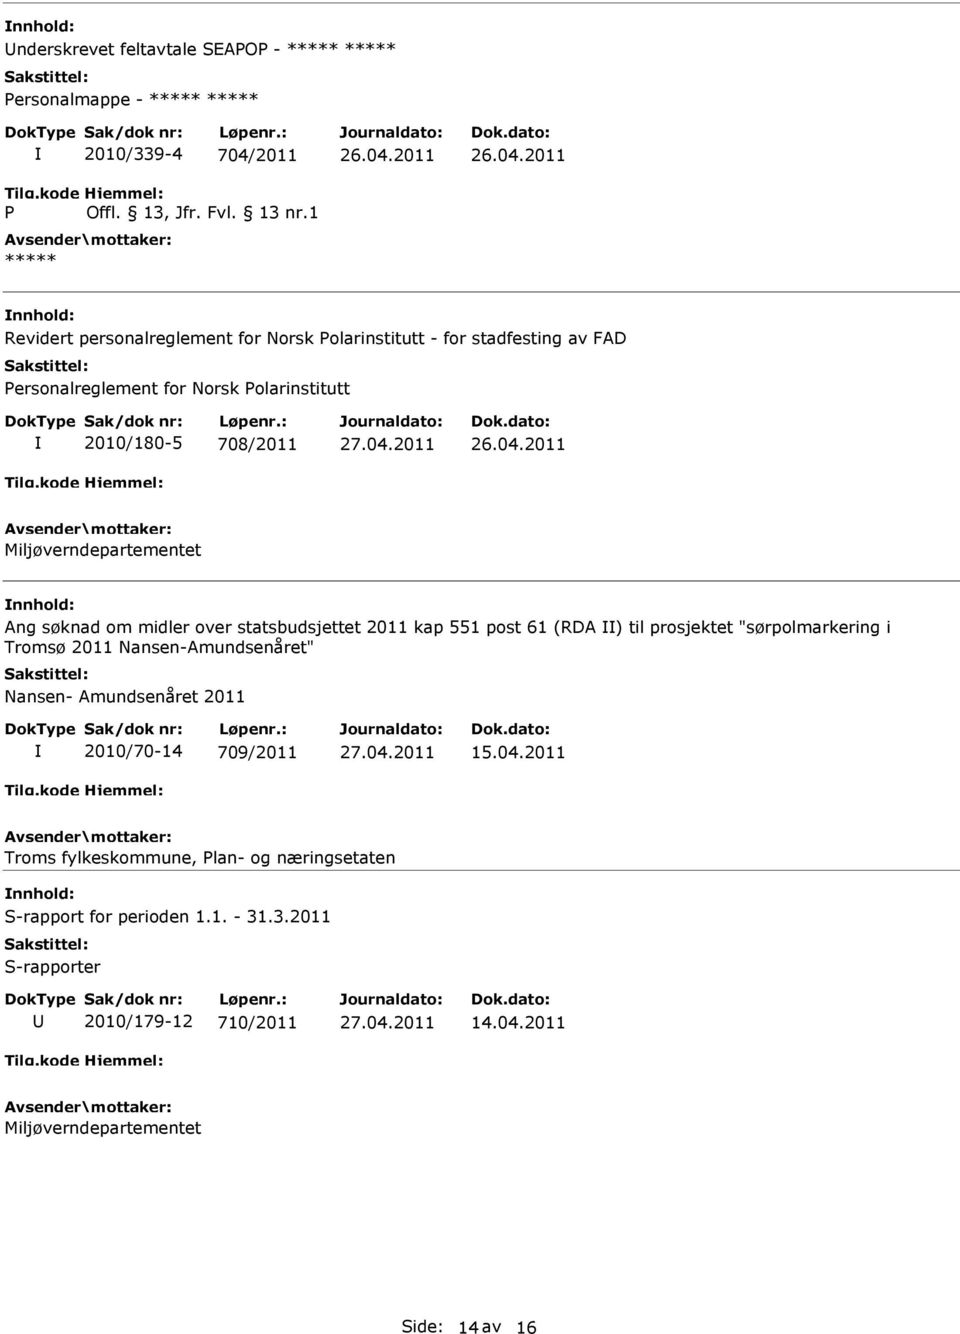 2011 Miljøverndepartementet nnhold: Ang søknad om midler over statsbudsjettet 2011 kap 551 post 61 (RDA ) til prosjektet "sørpolmarkering i Tromsø 2011